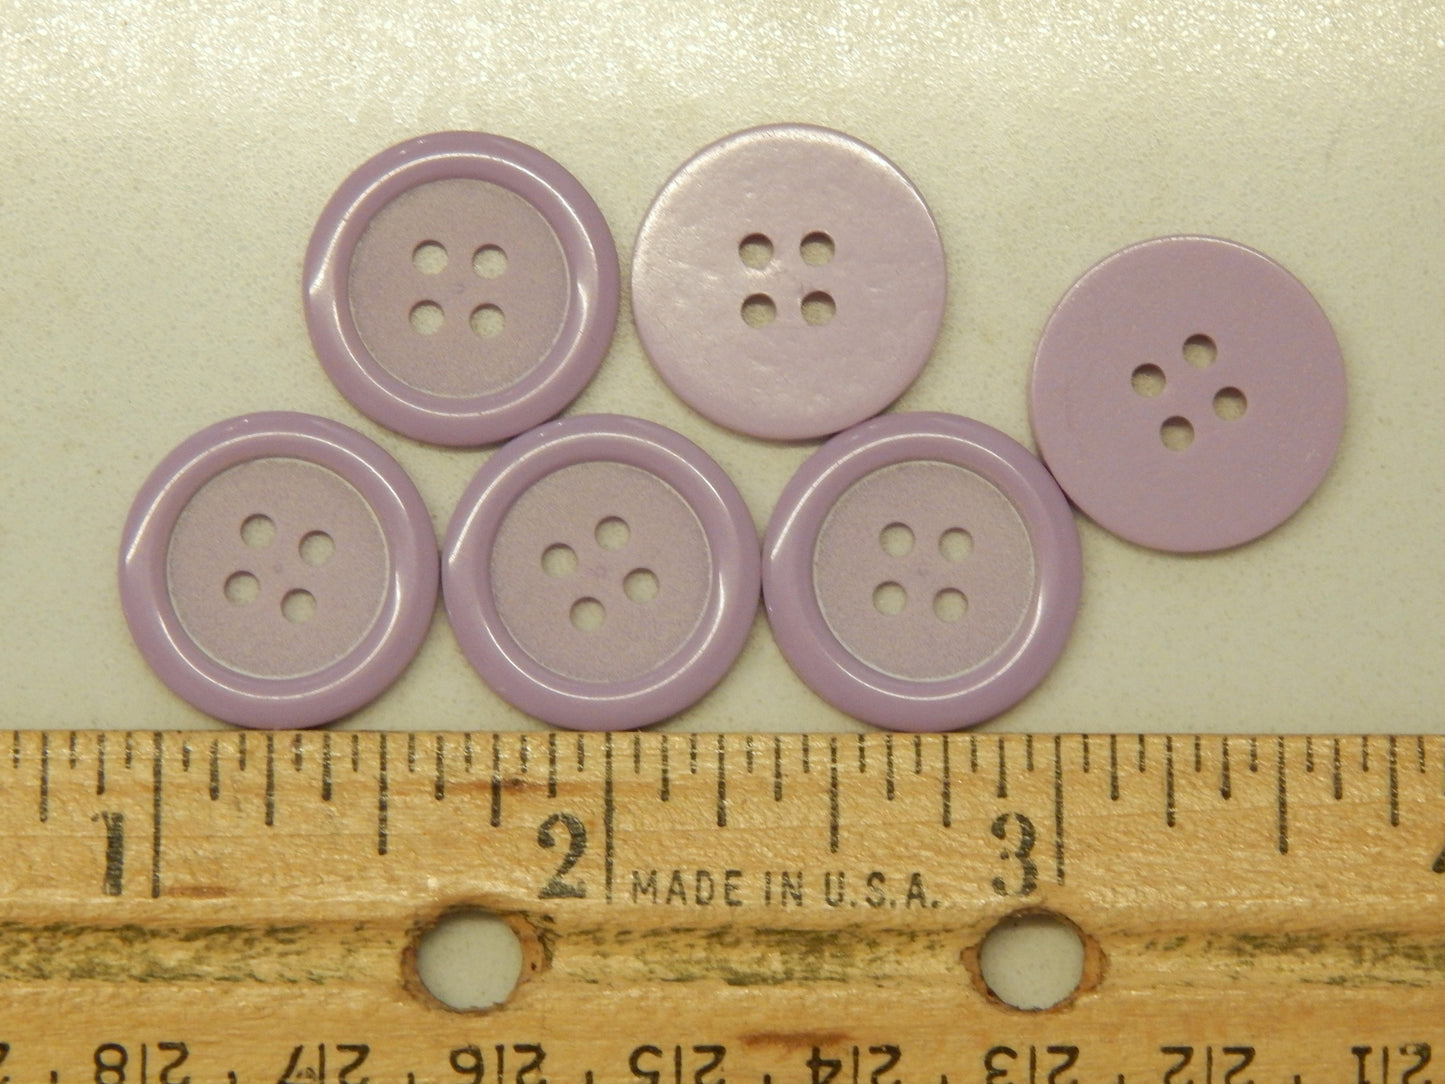 Matte Lavender Buttons